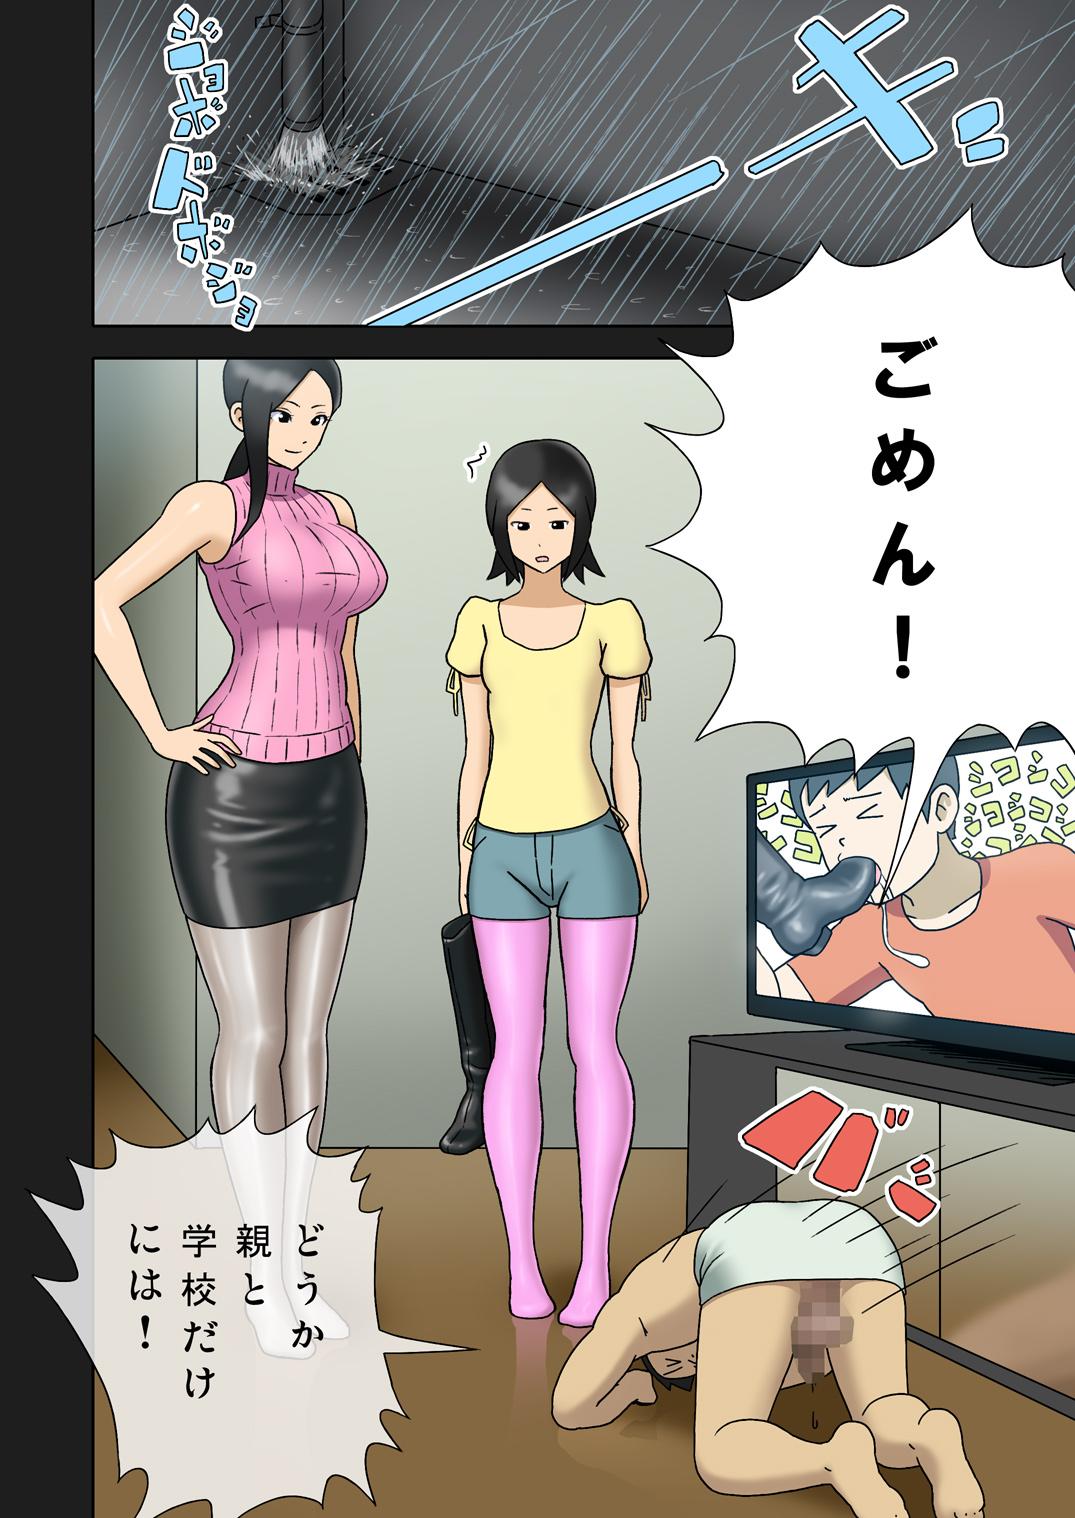 [Enka Boots] Enka Boots no Manga 1 - Juku no Sensei ga Joou-sama V2.0 9